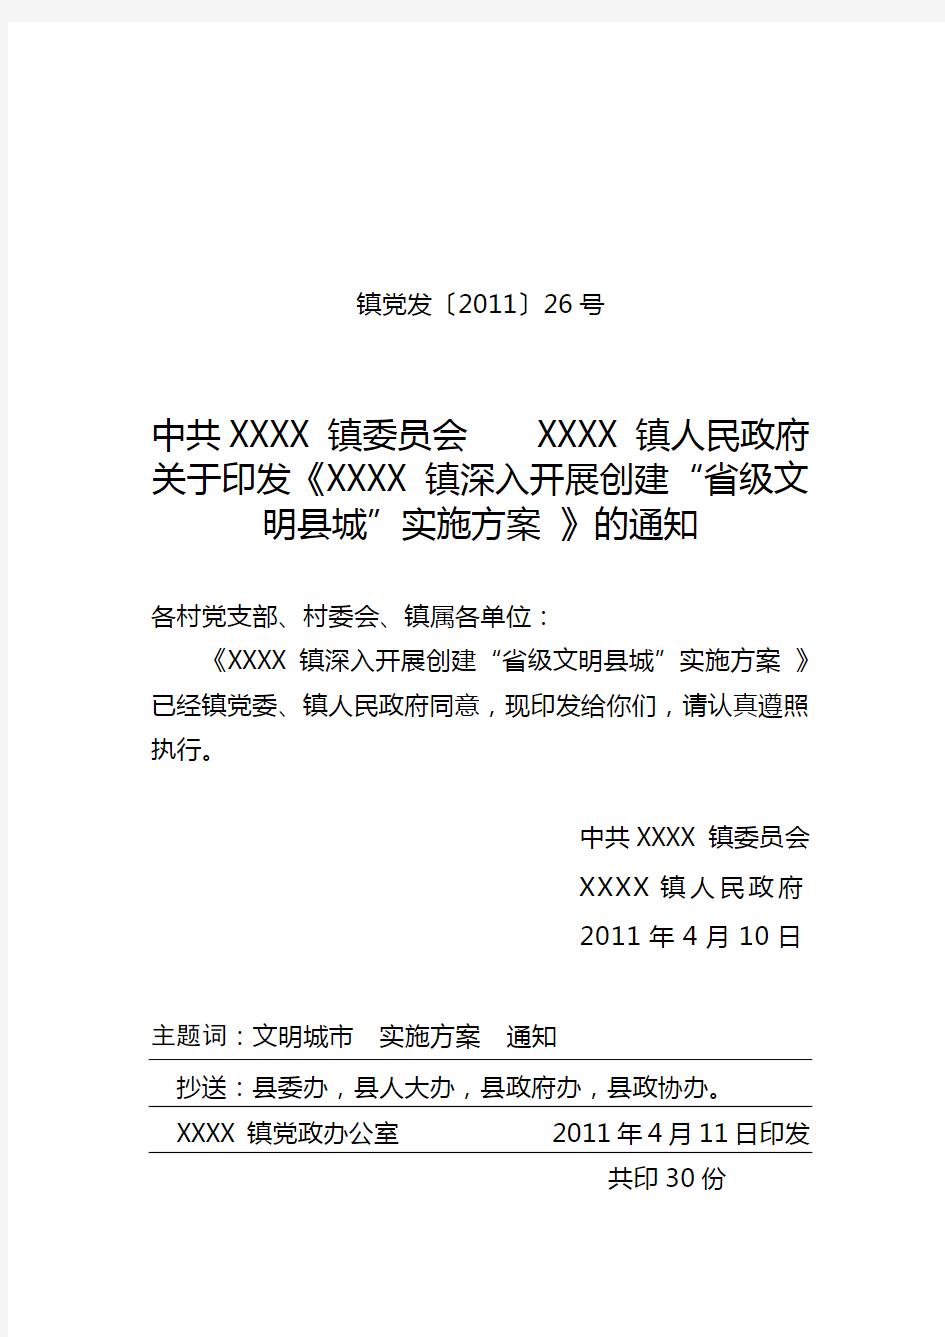 XXXX镇深入开展创建“省级文明县城”实施方案